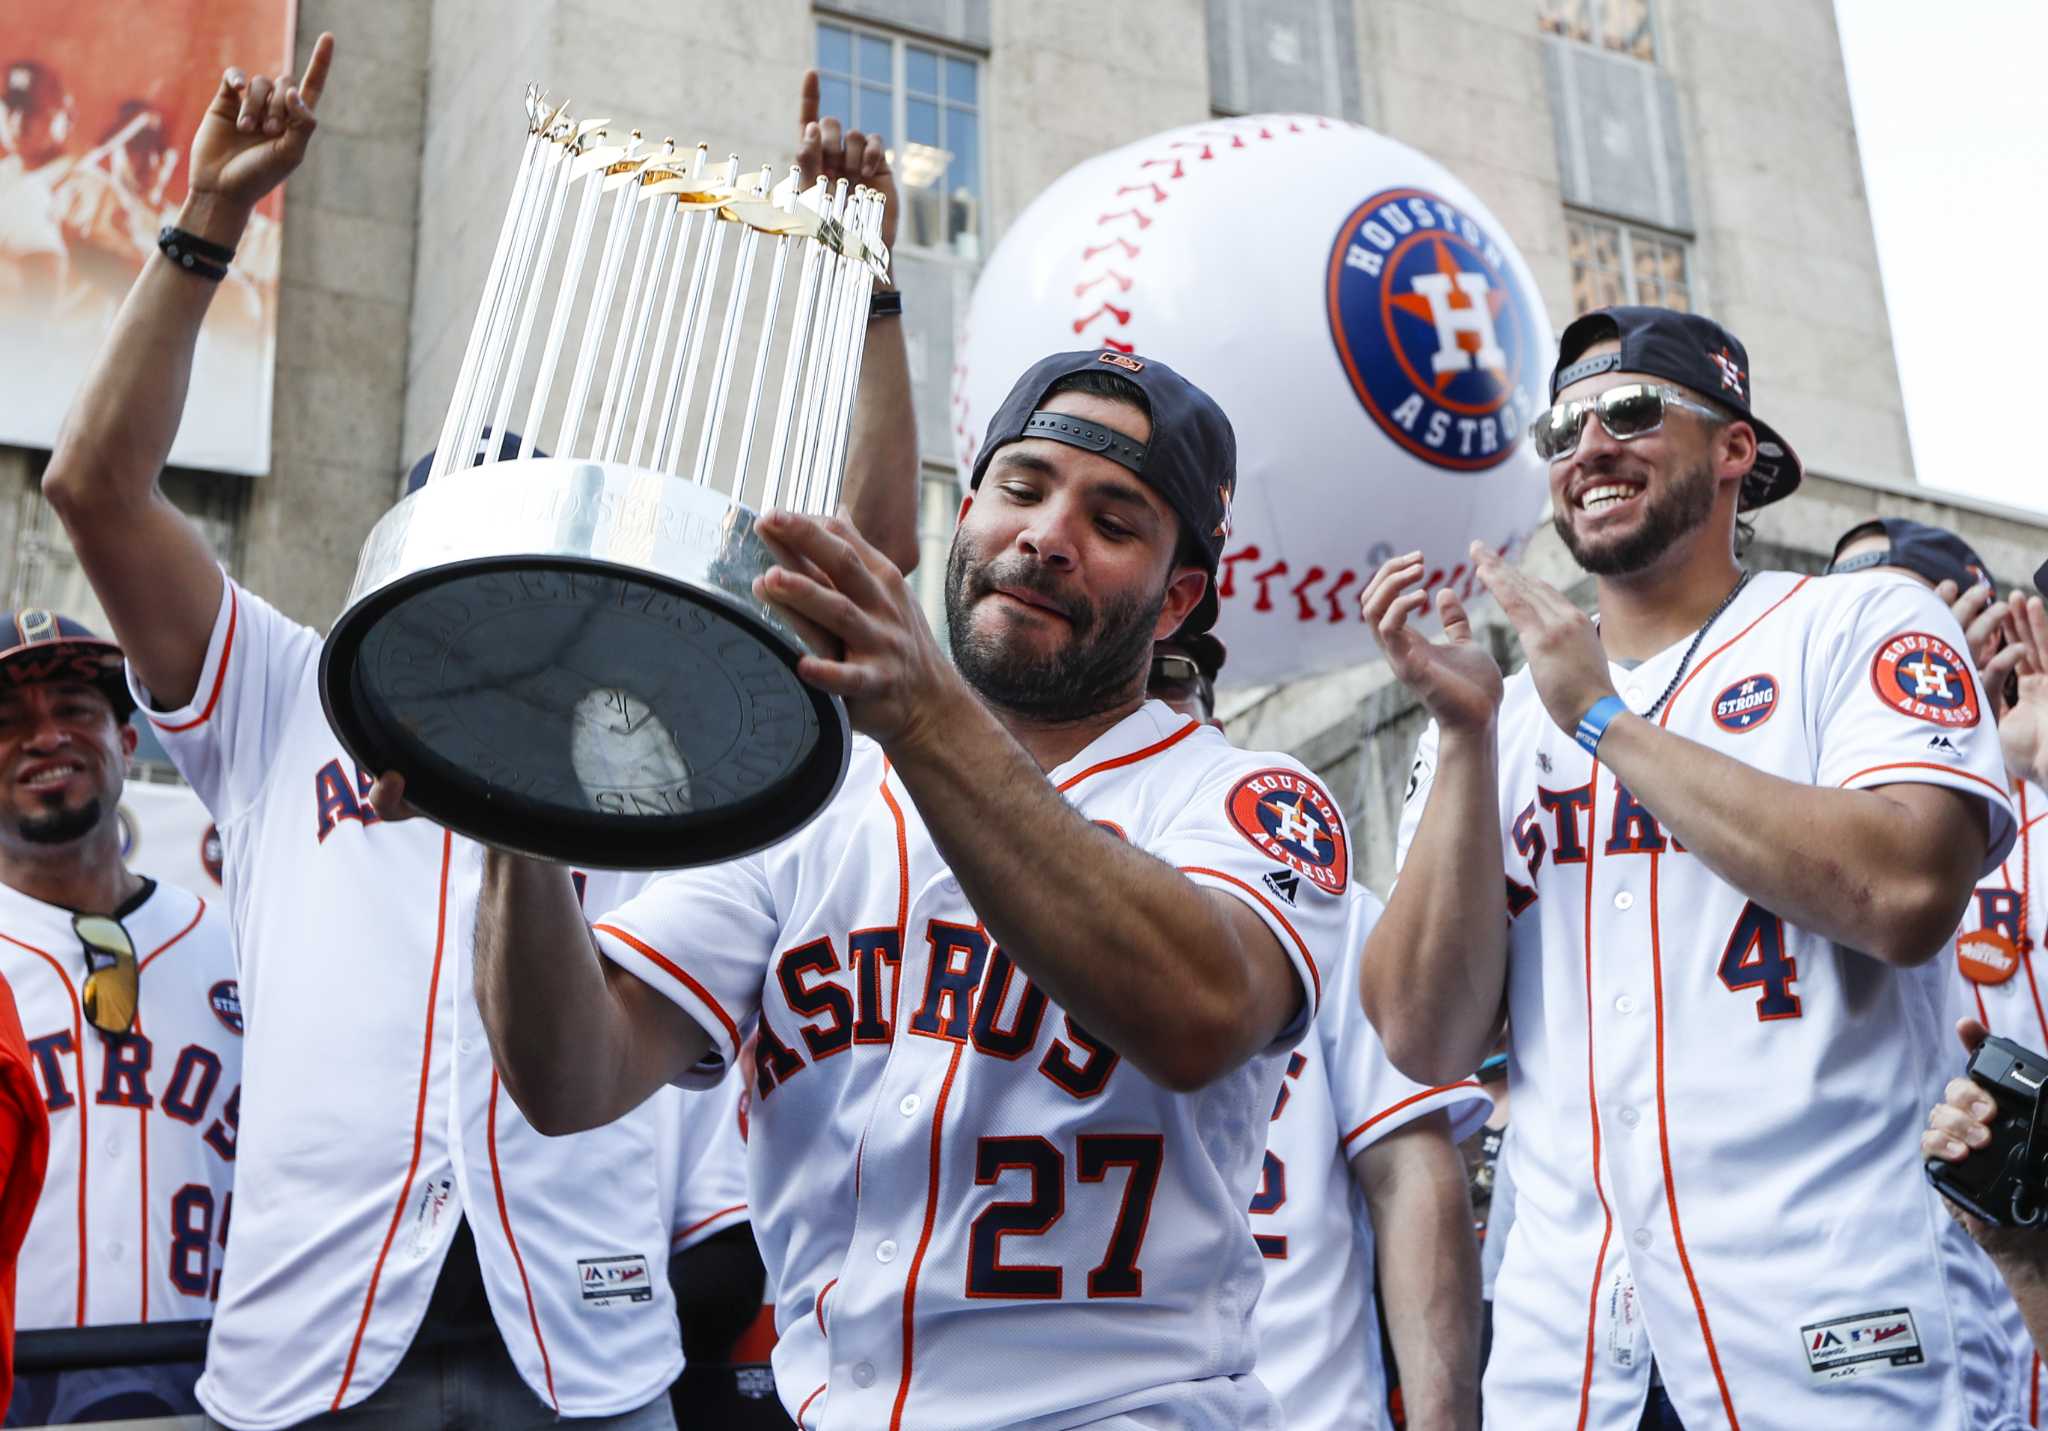 World Series trophy takes a tumble at Houston men's gala - Houston Chronicle